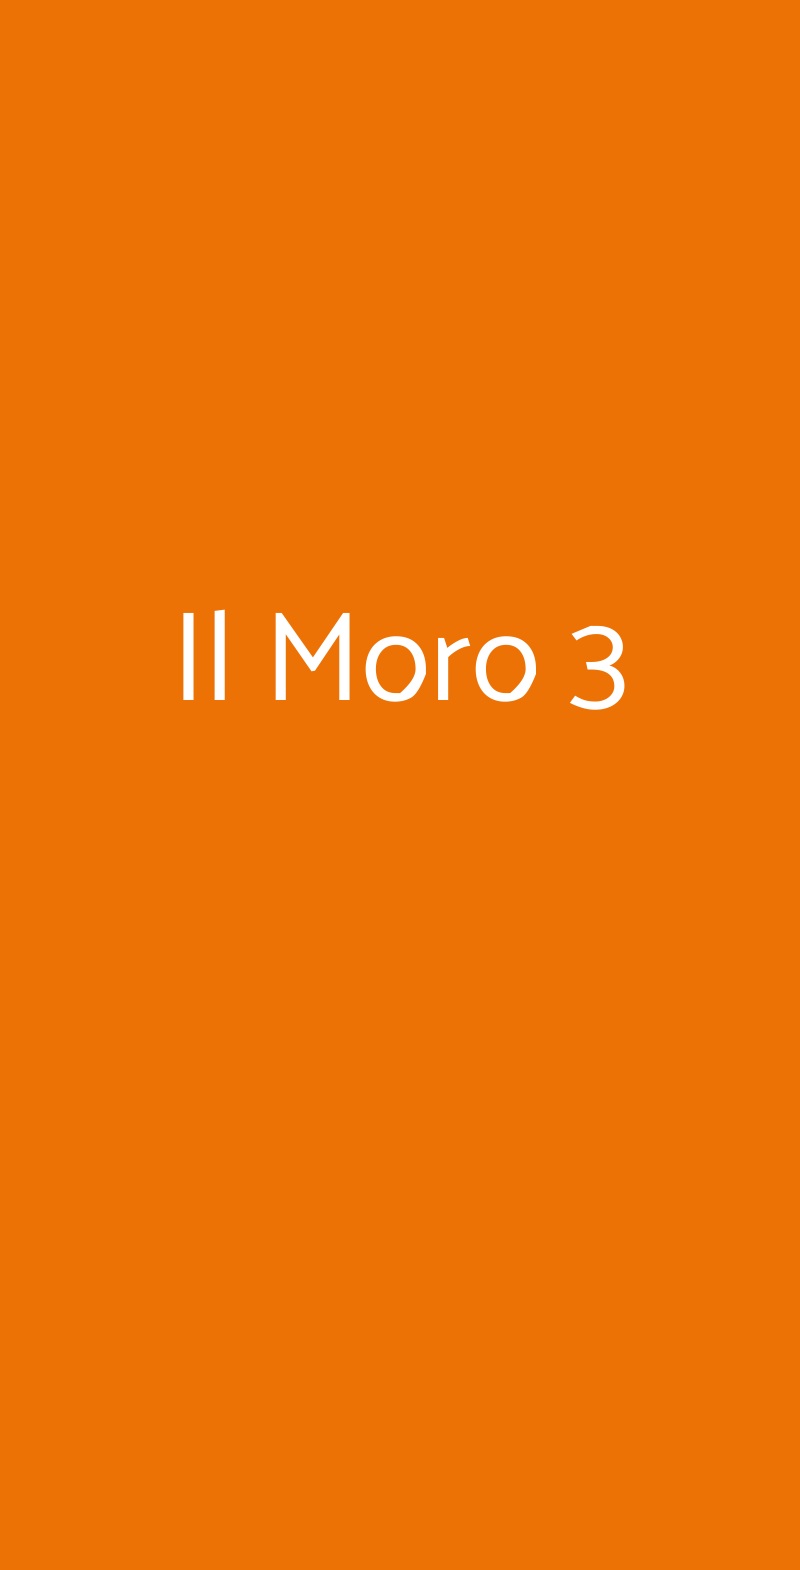 Il Moro 3 Milano menù 1 pagina